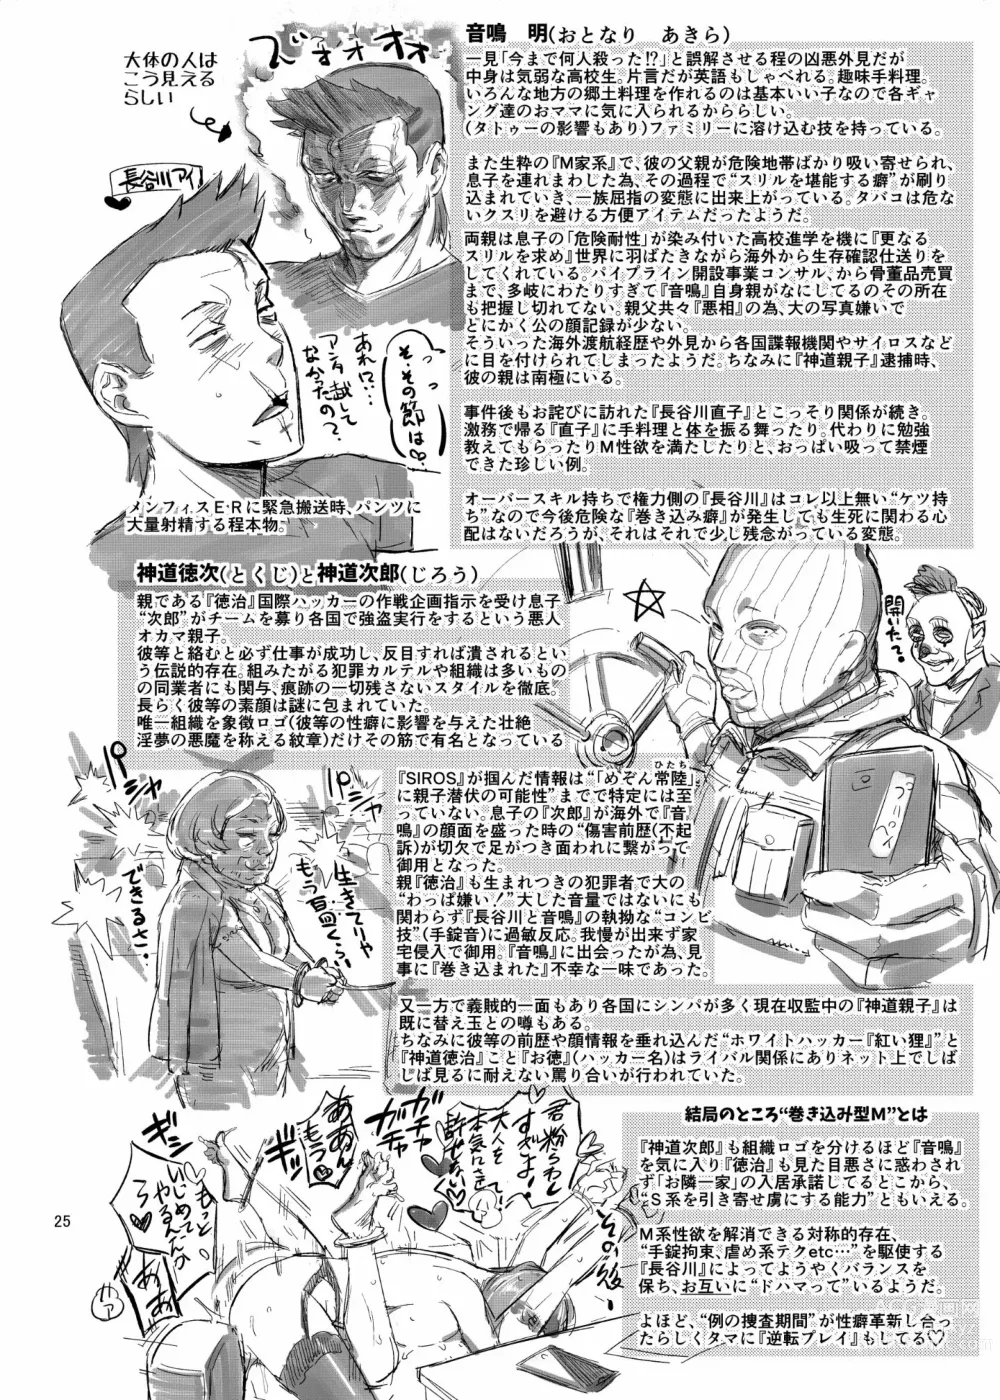 Page 26 of doujinshi Otonari-san no Otoshikata